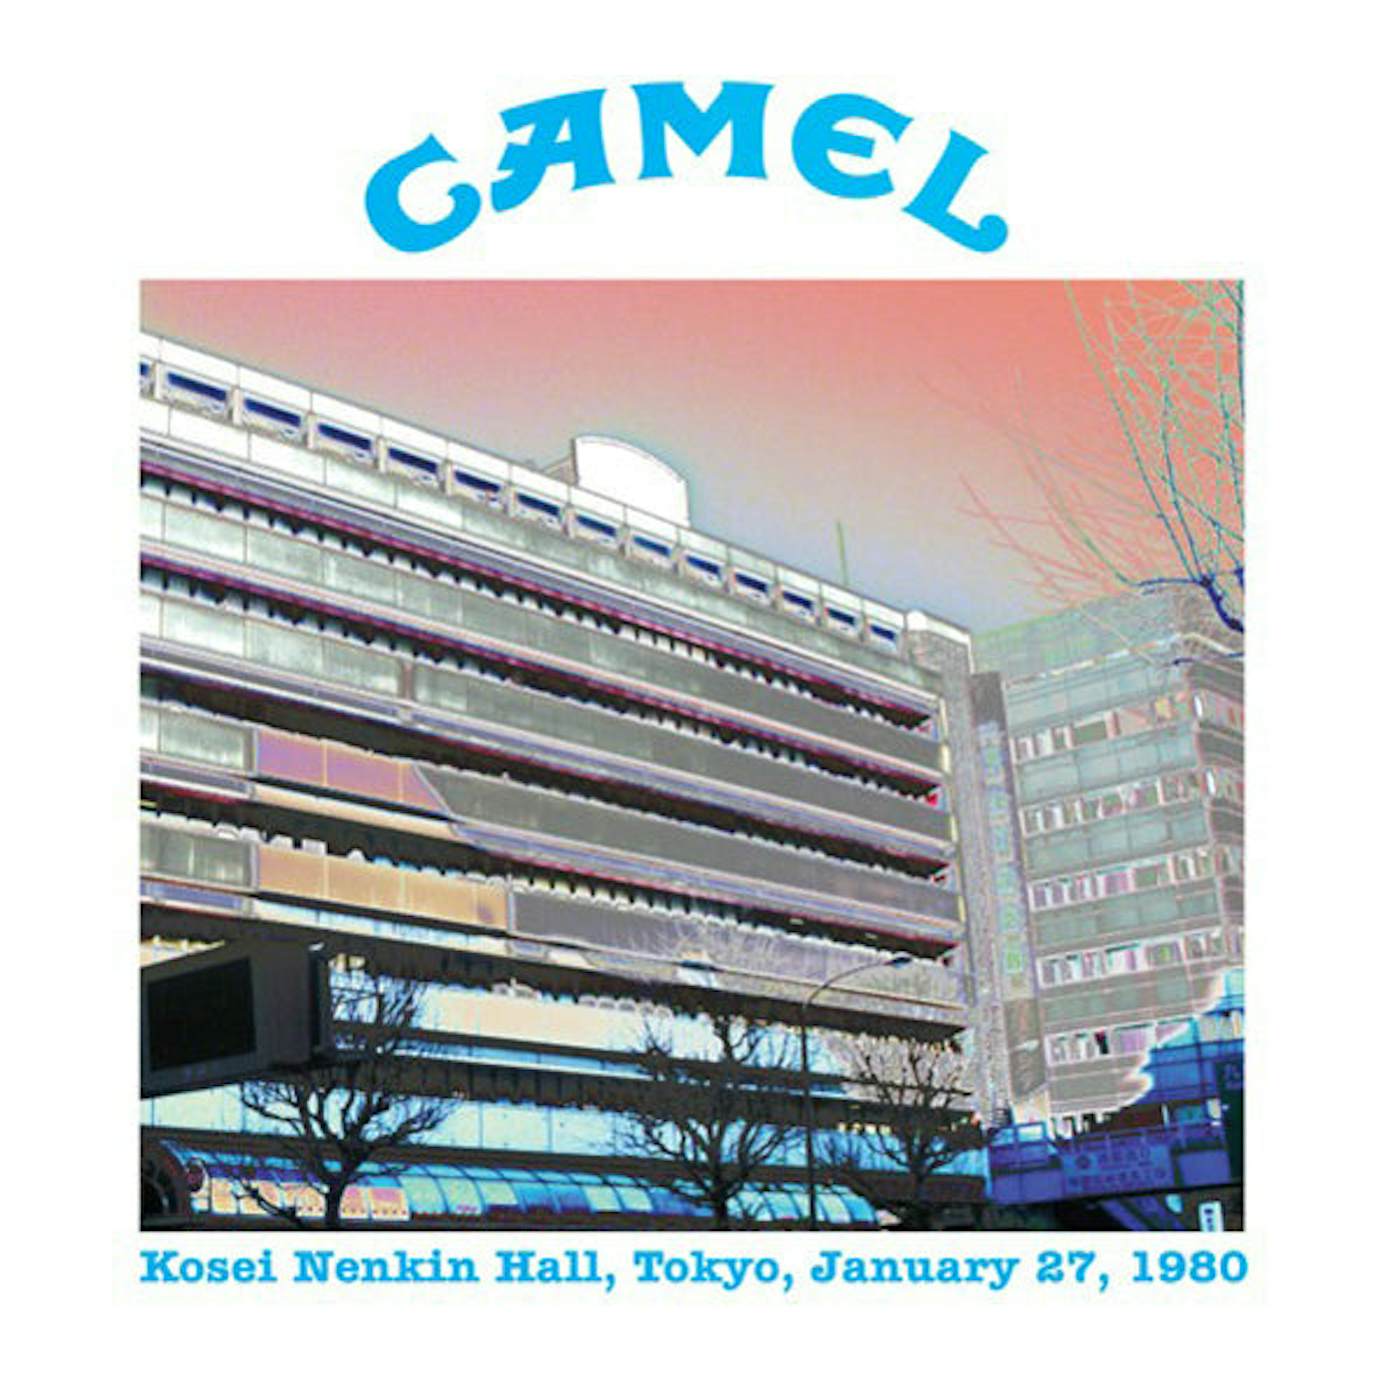 Camel LP - Kosei Nenkin Hall, Tokyo, January 27Th 1980 (Blue Vinyl)